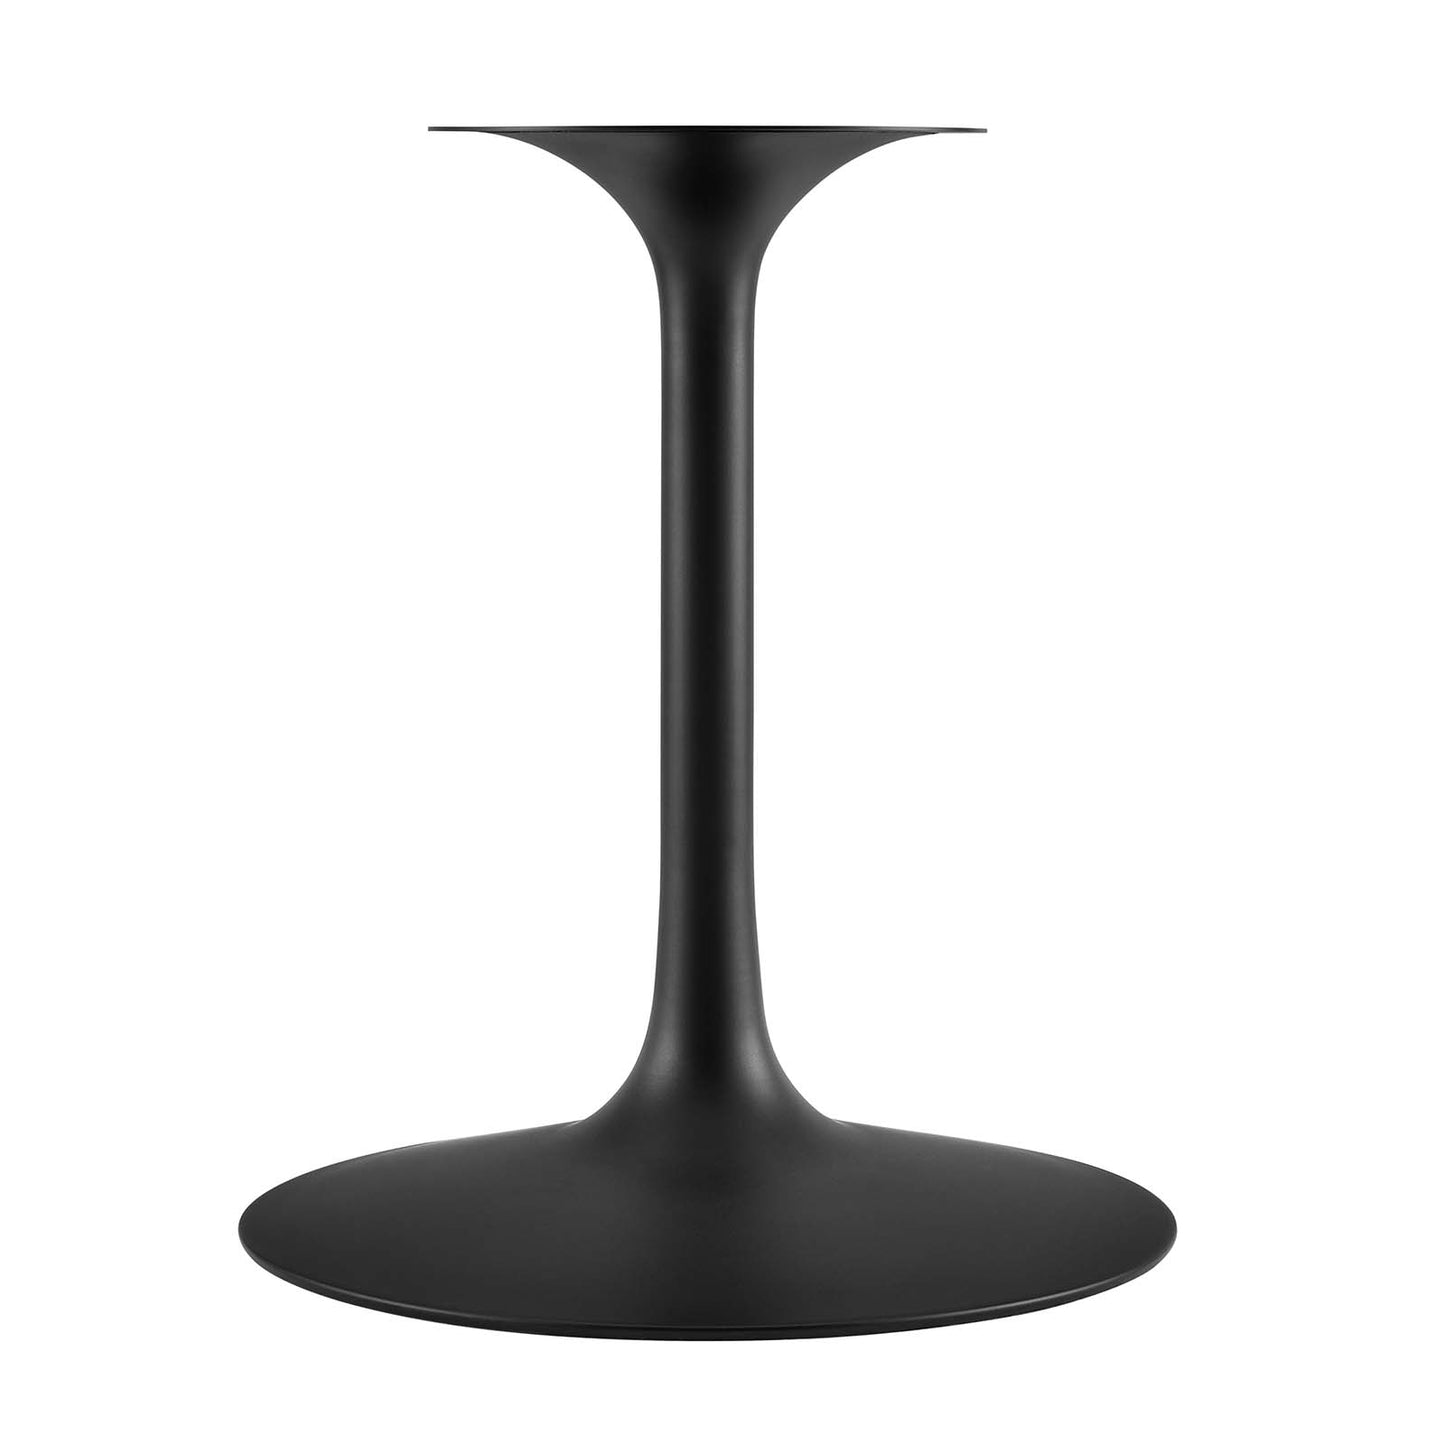 Lippa 40" Round Terrazzo Dining Table Black White EEI-5725-BLK-WHI